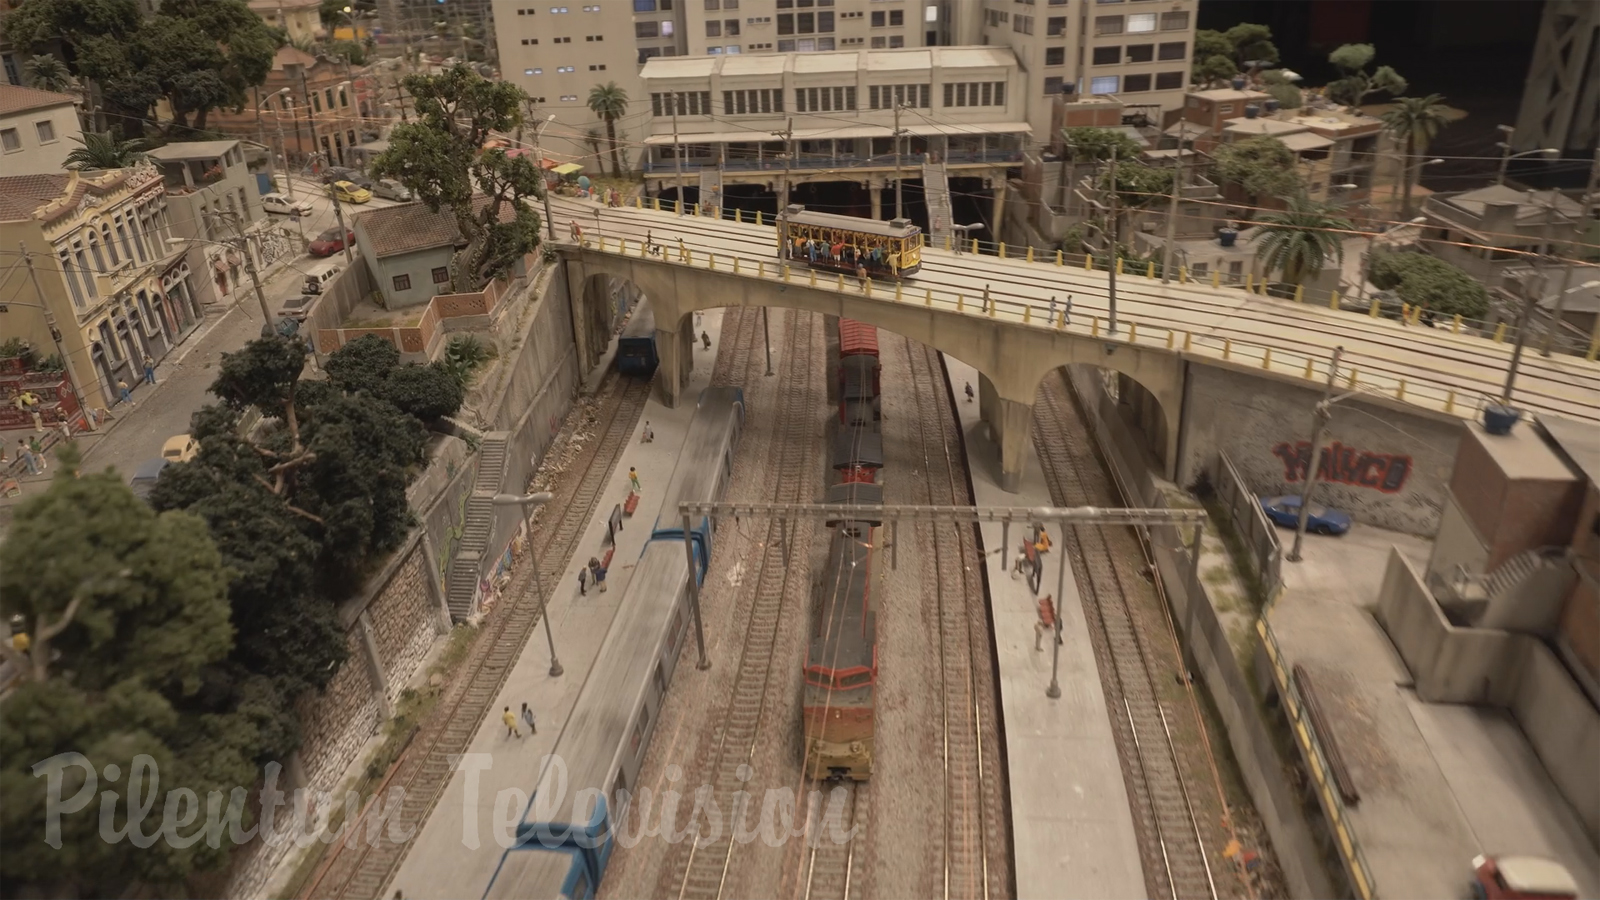 Maquete de trem do Rio de Janeiro - Model train diorama and model railway scenery of Brazil